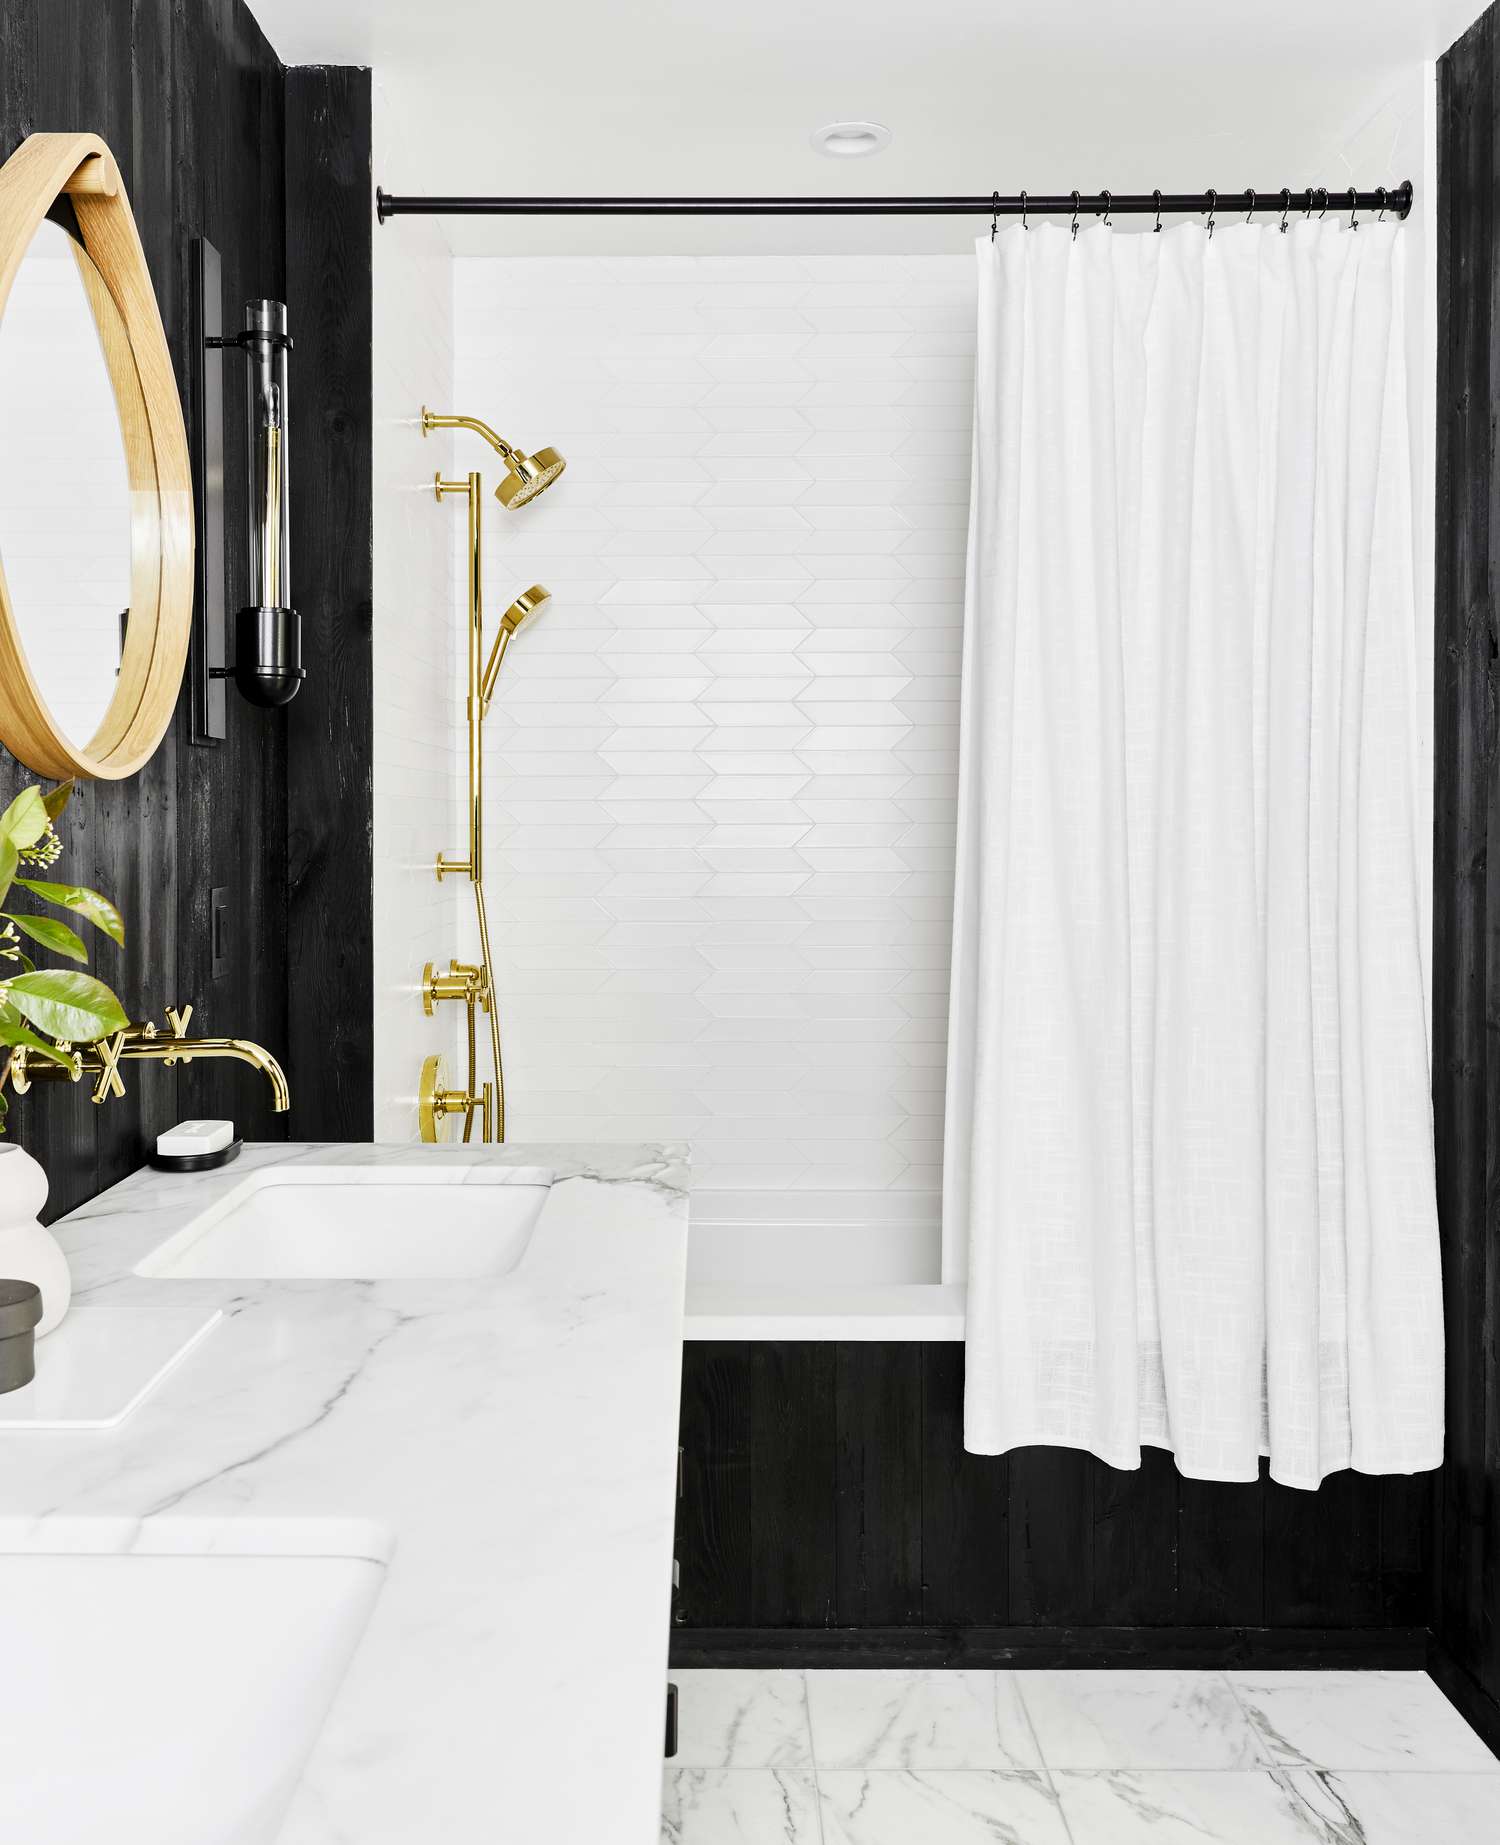 Une salle de bain noire a un rideau de douche blanc suspendu au-dessus de la baignoire